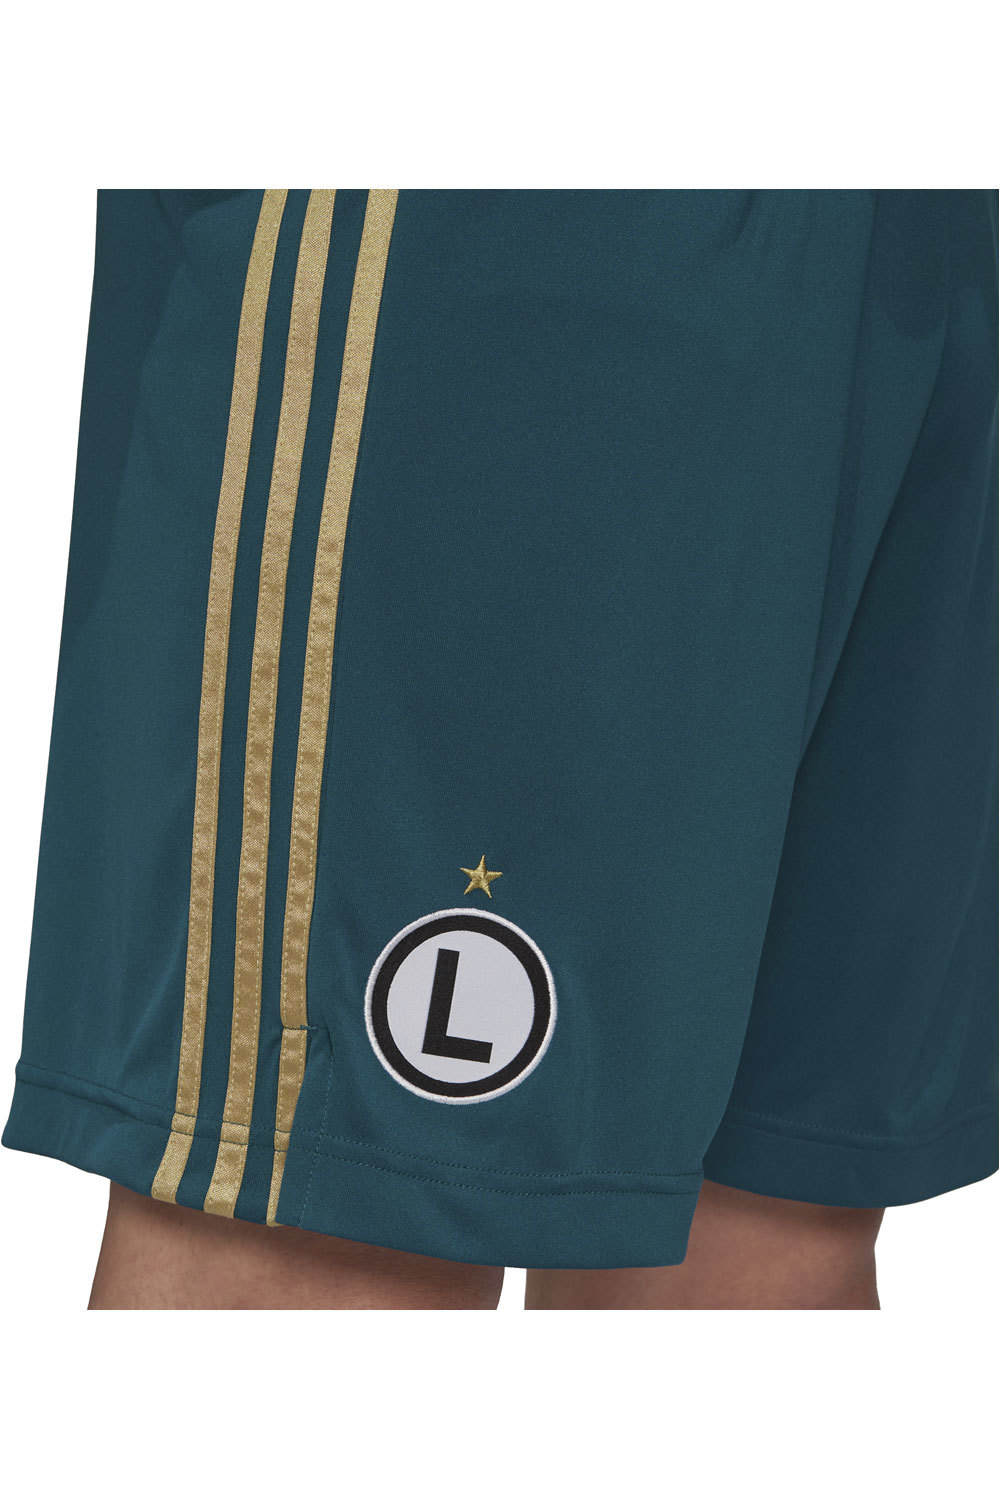 adidas pantalones fútbol oficiales Legia Warsaw 21/22 vista detalle